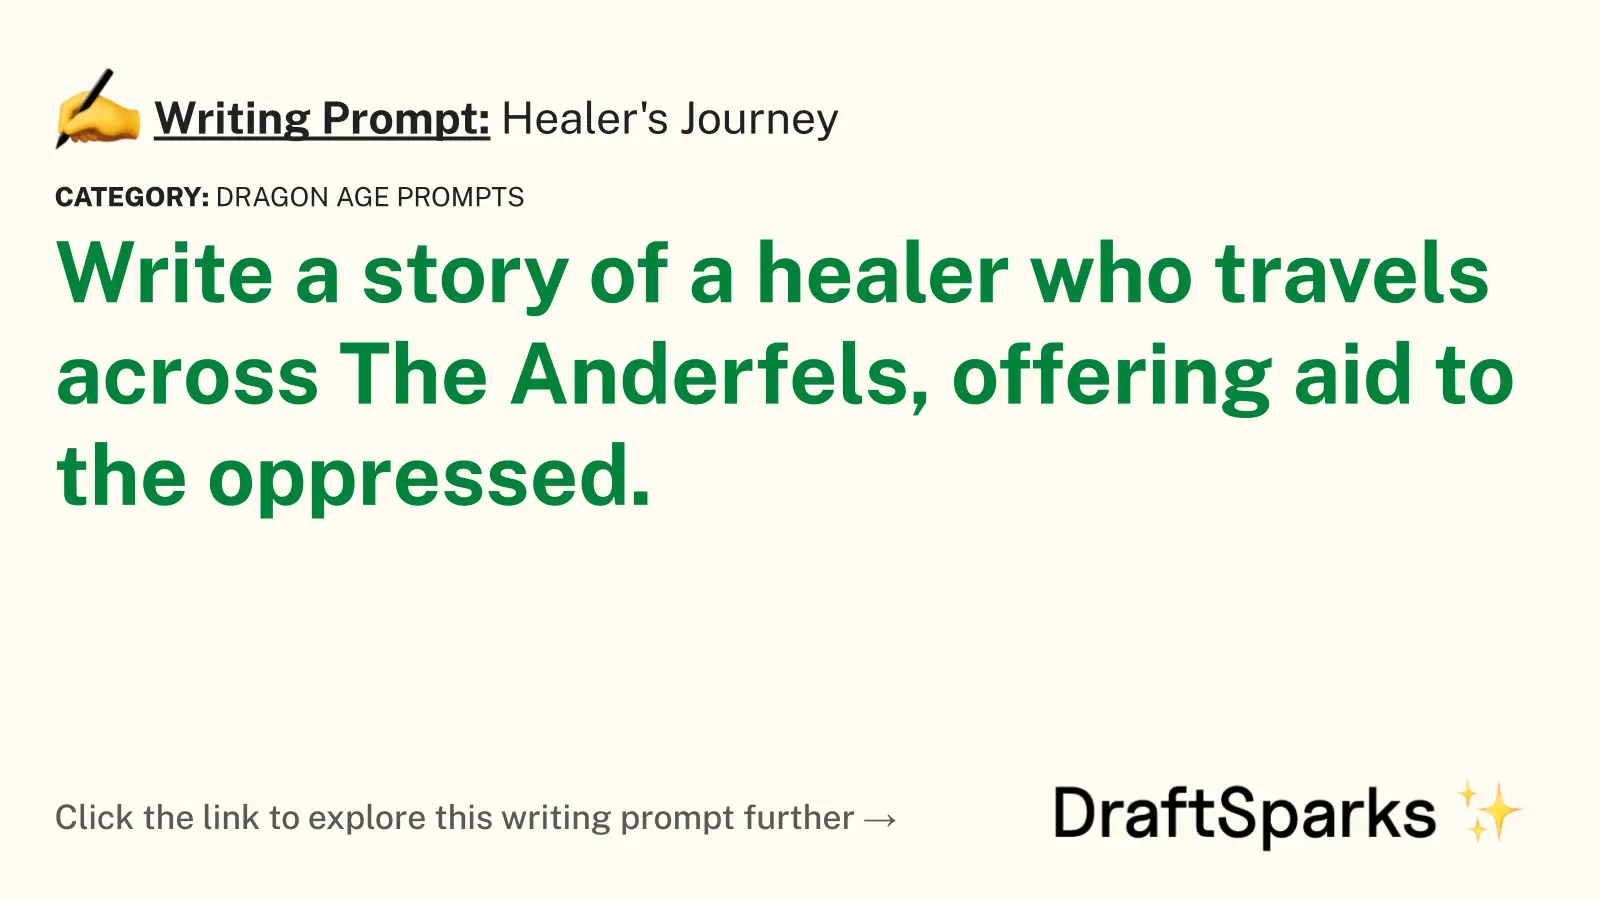 Healer’s Journey